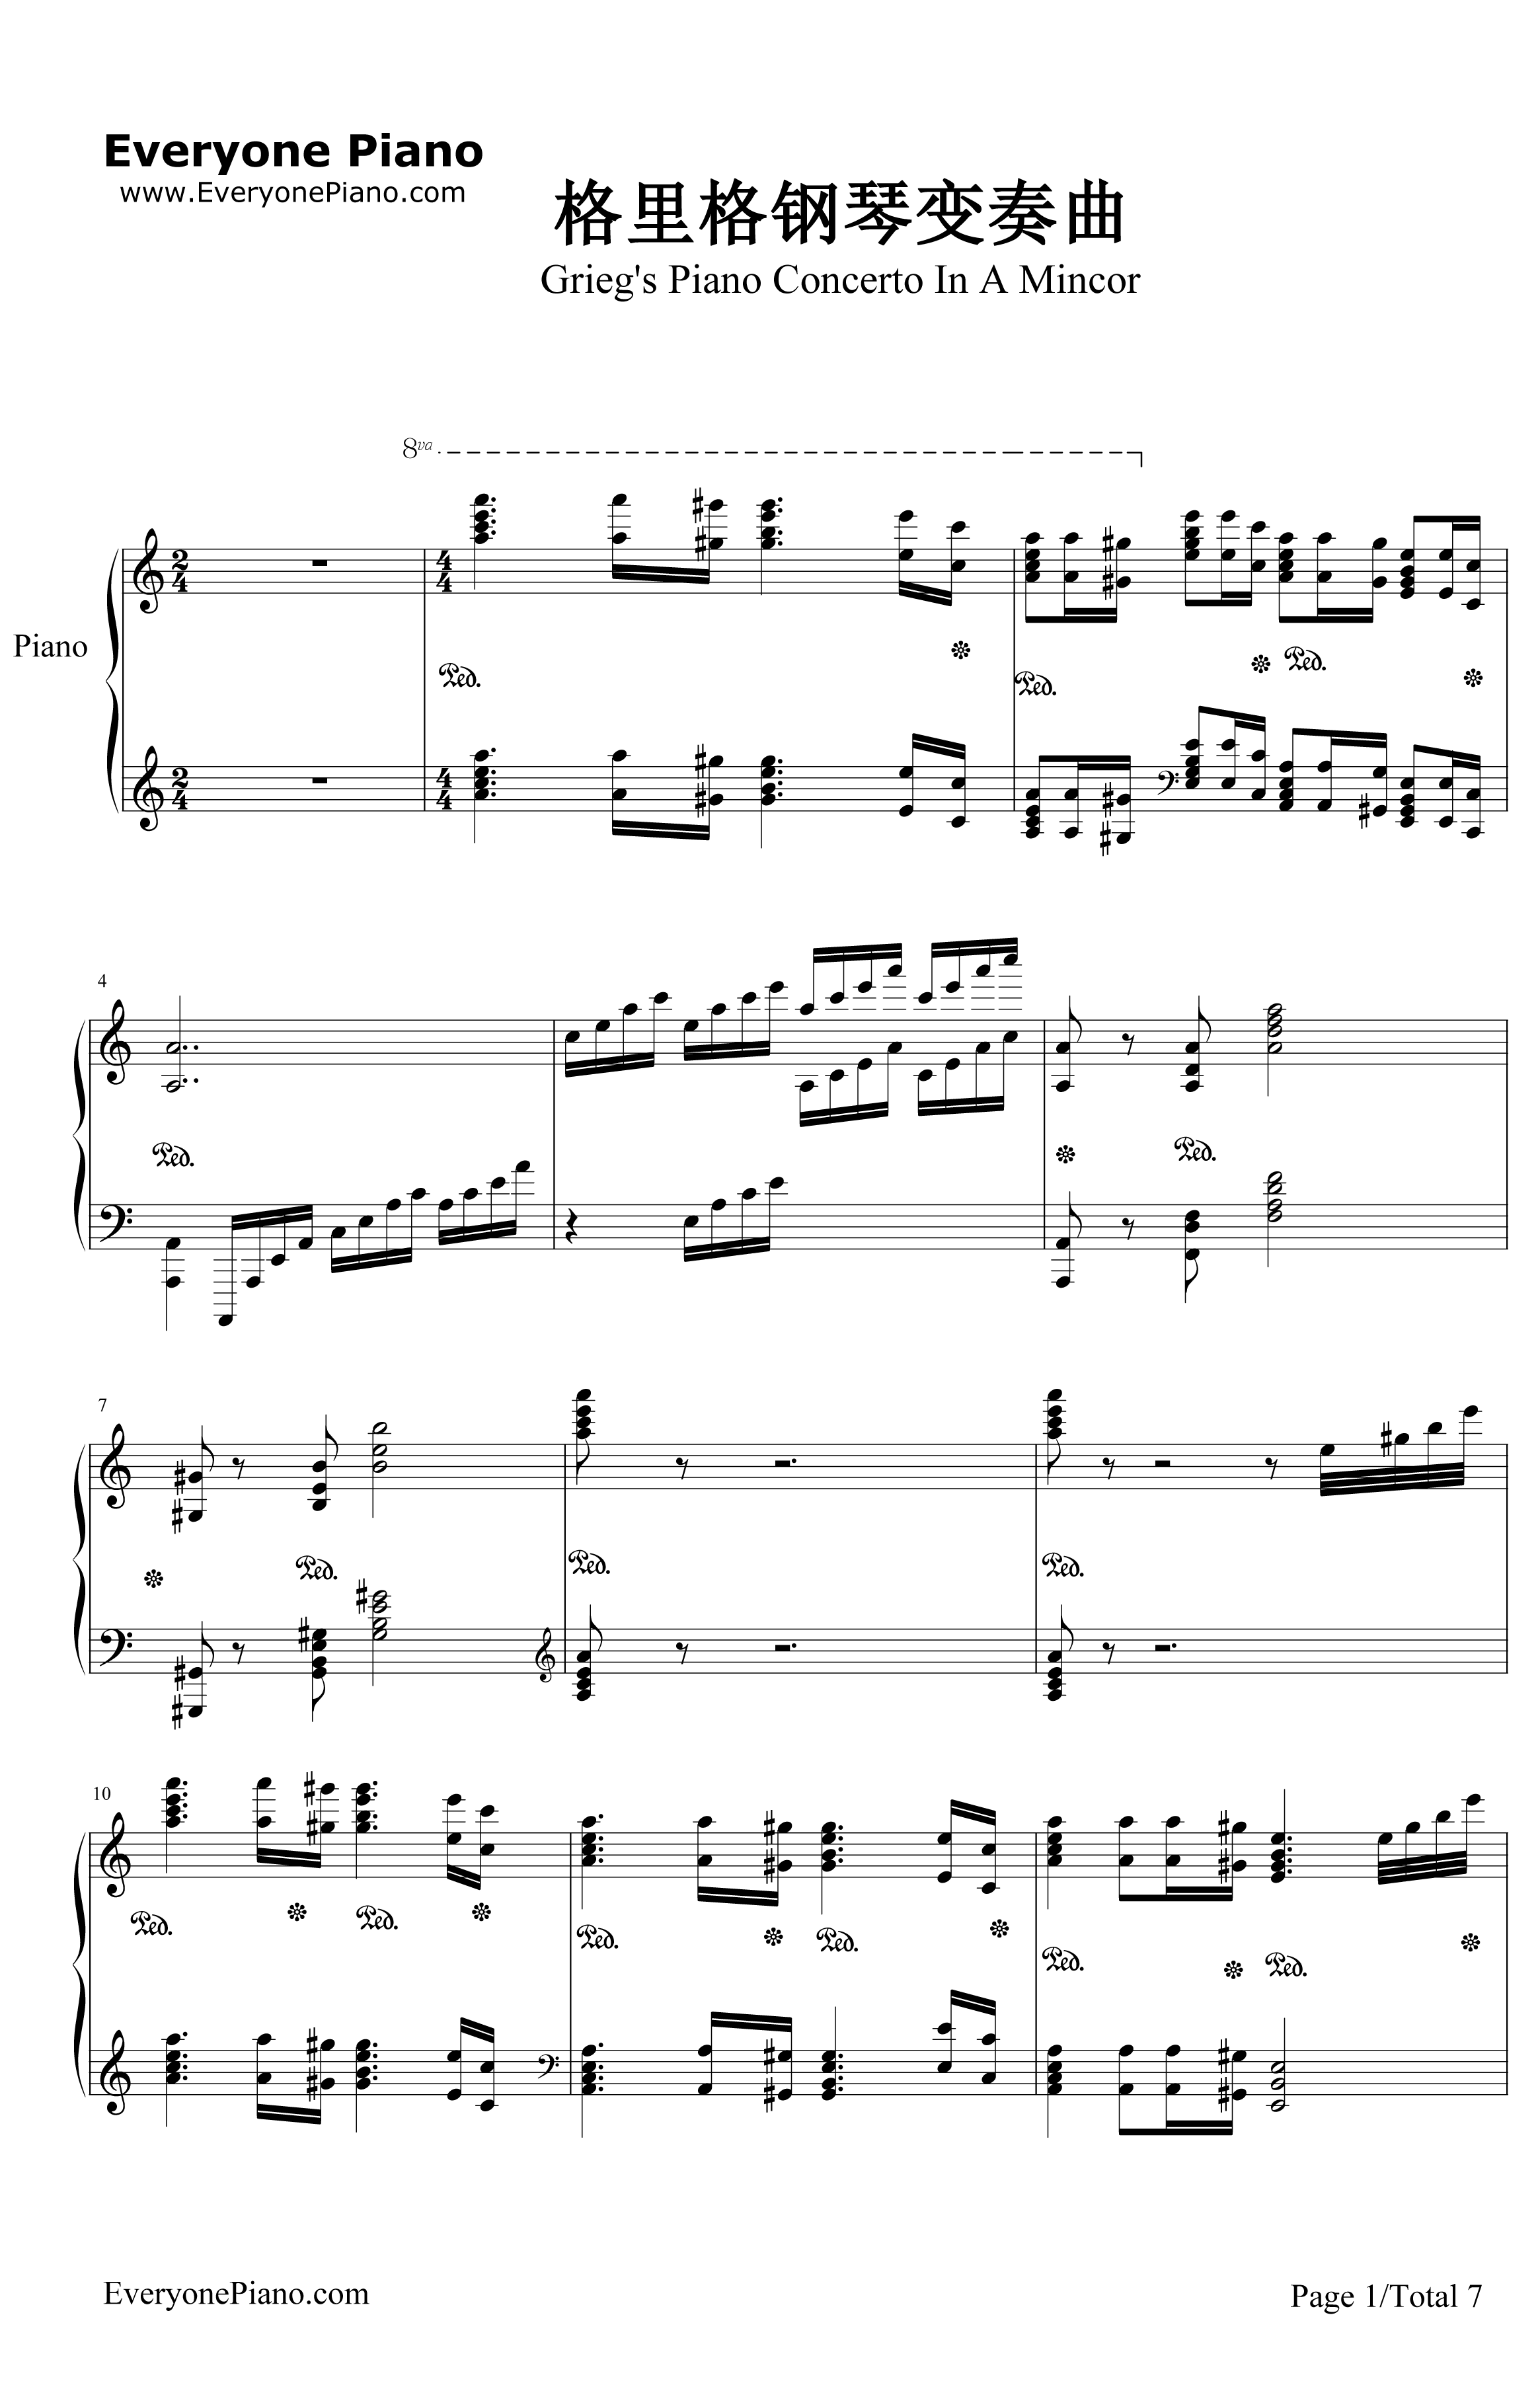 格里格钢琴变奏曲钢琴谱-马克西姆-格里格钢琴变奏曲1